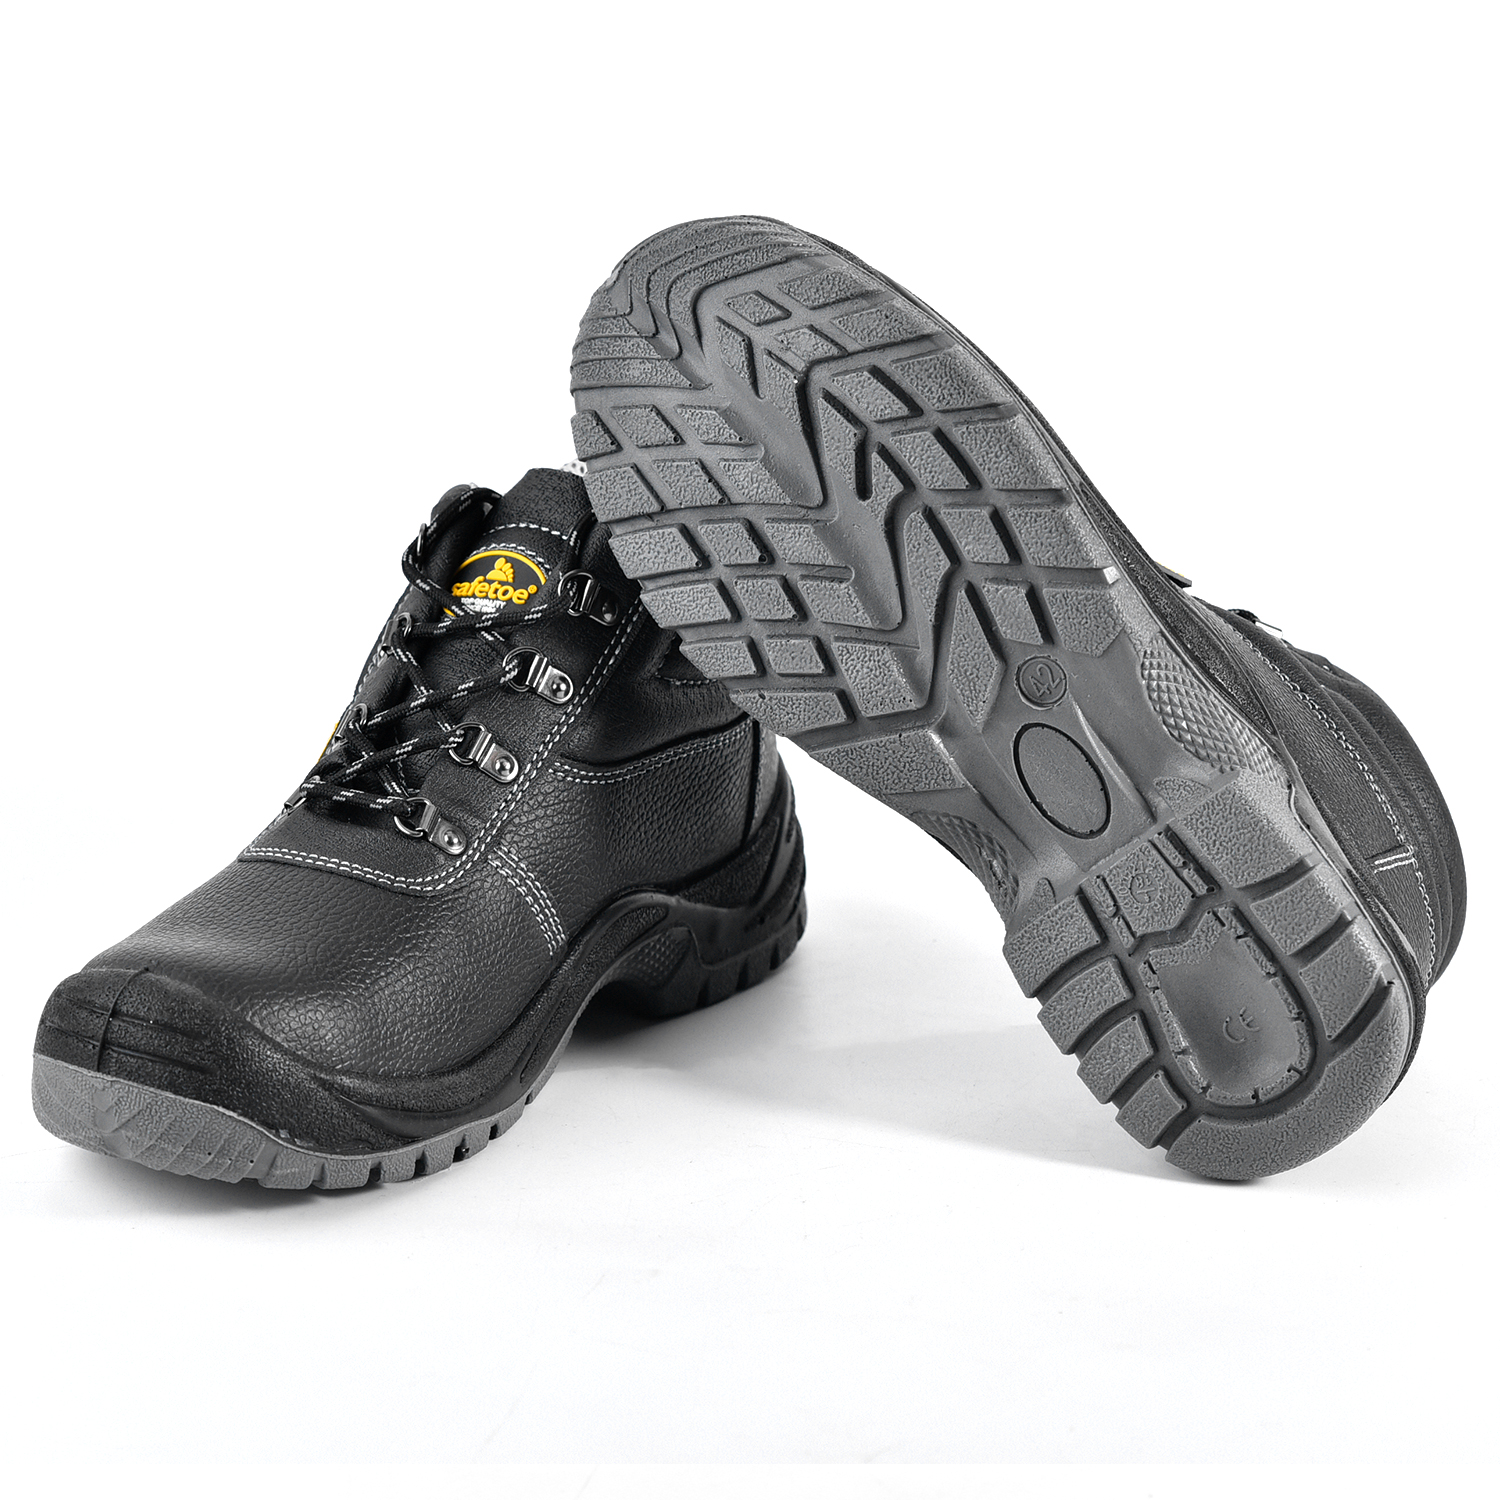 Chaussures de sécurité Steel Toe S3 M-8138 Gris